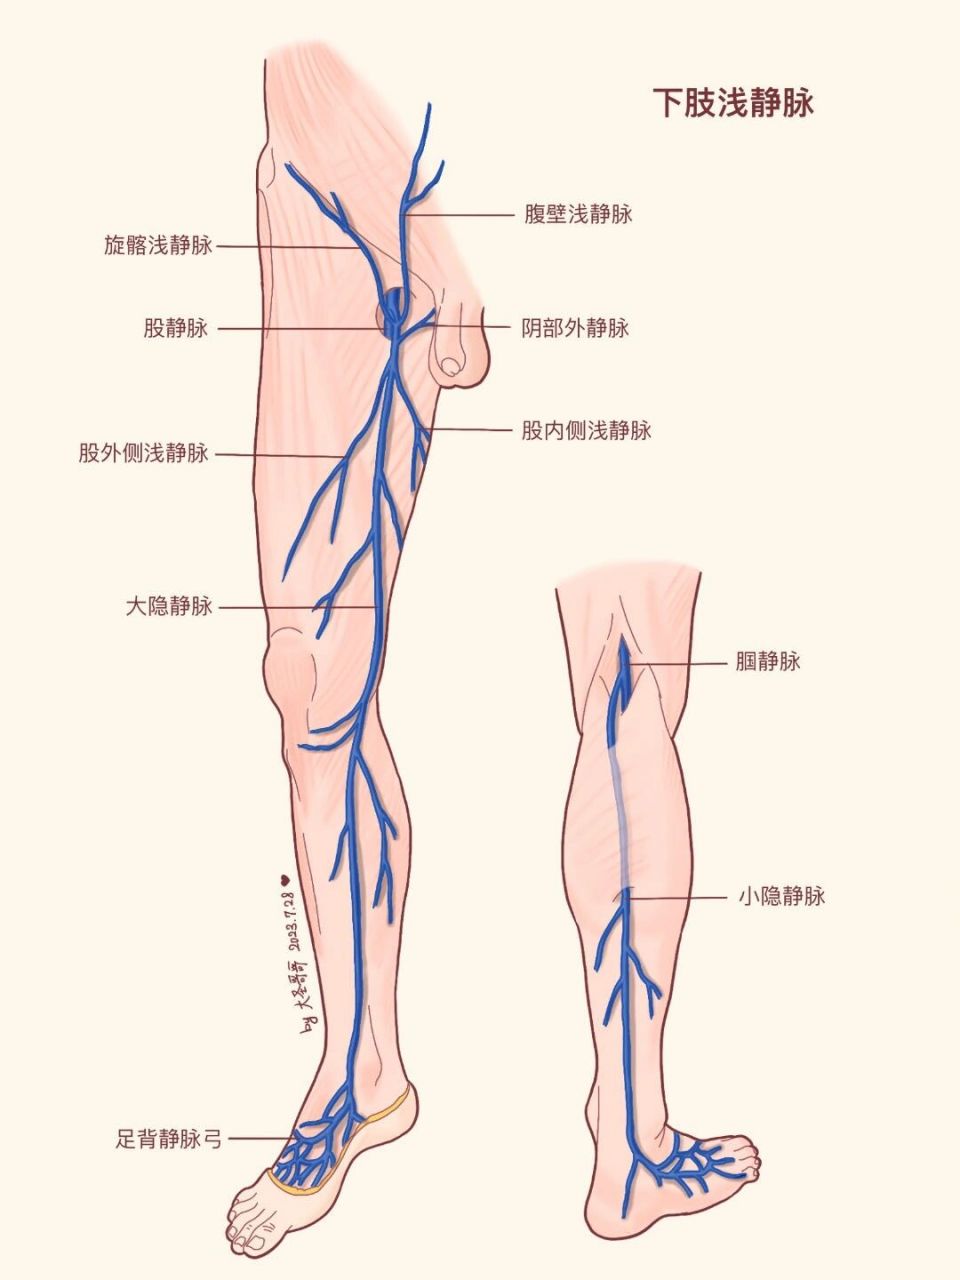 【解剖学教材重绘79】大隐静脉还是小隐静脉 【敲重点】下肢静脉均有